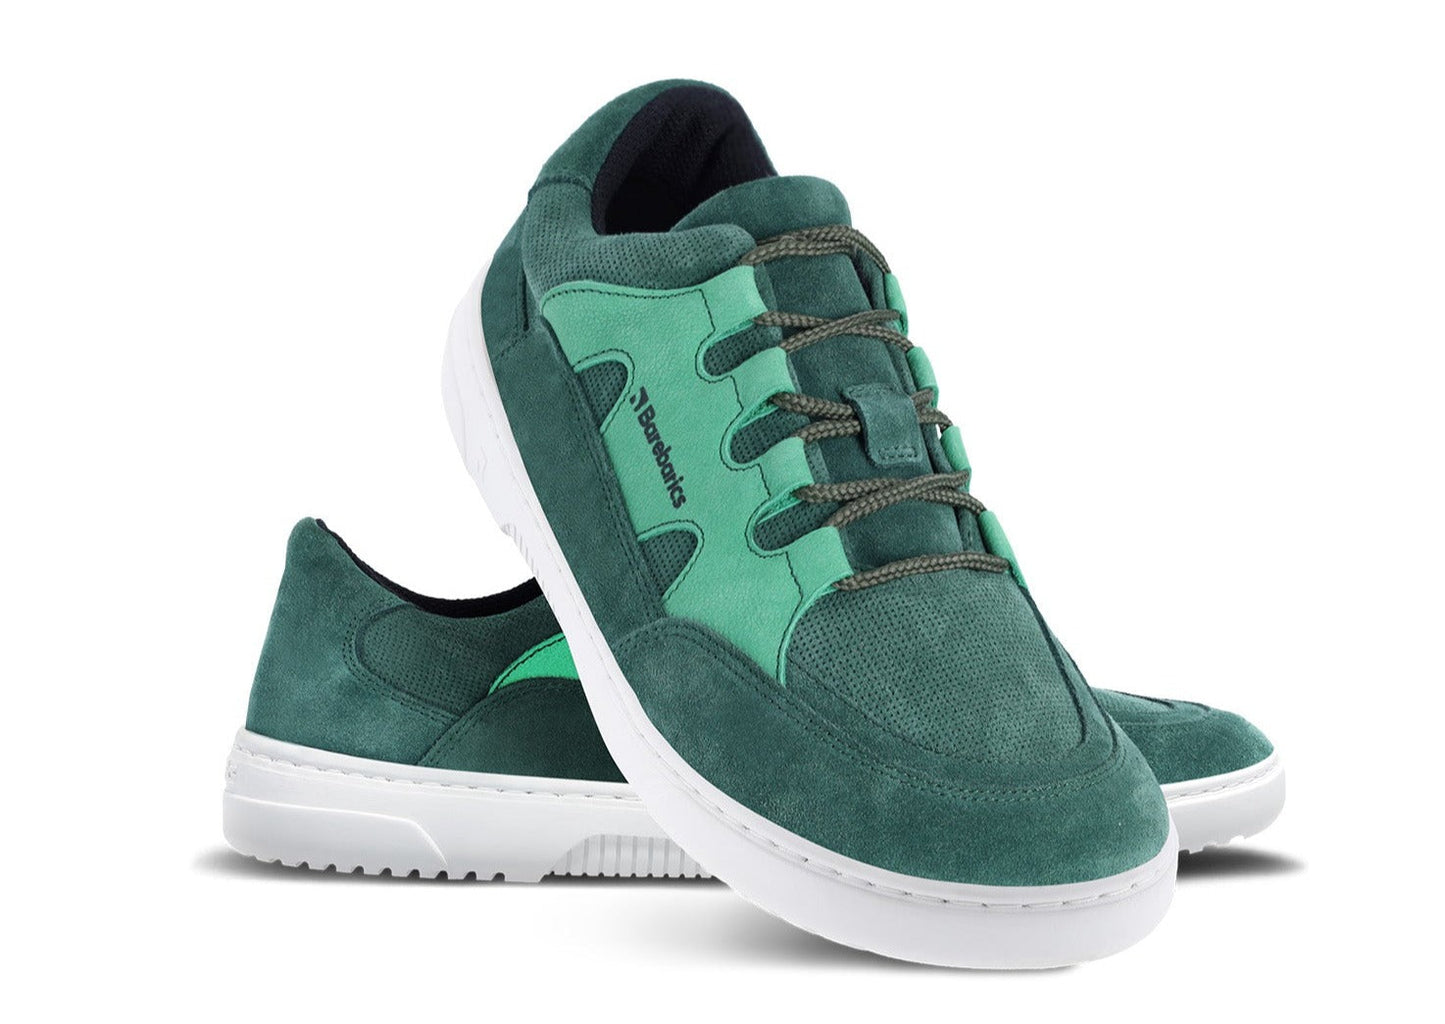 Barefoot Sneakers Barebarics Evo - Dark Green & White 2 OzBarefoot Australia